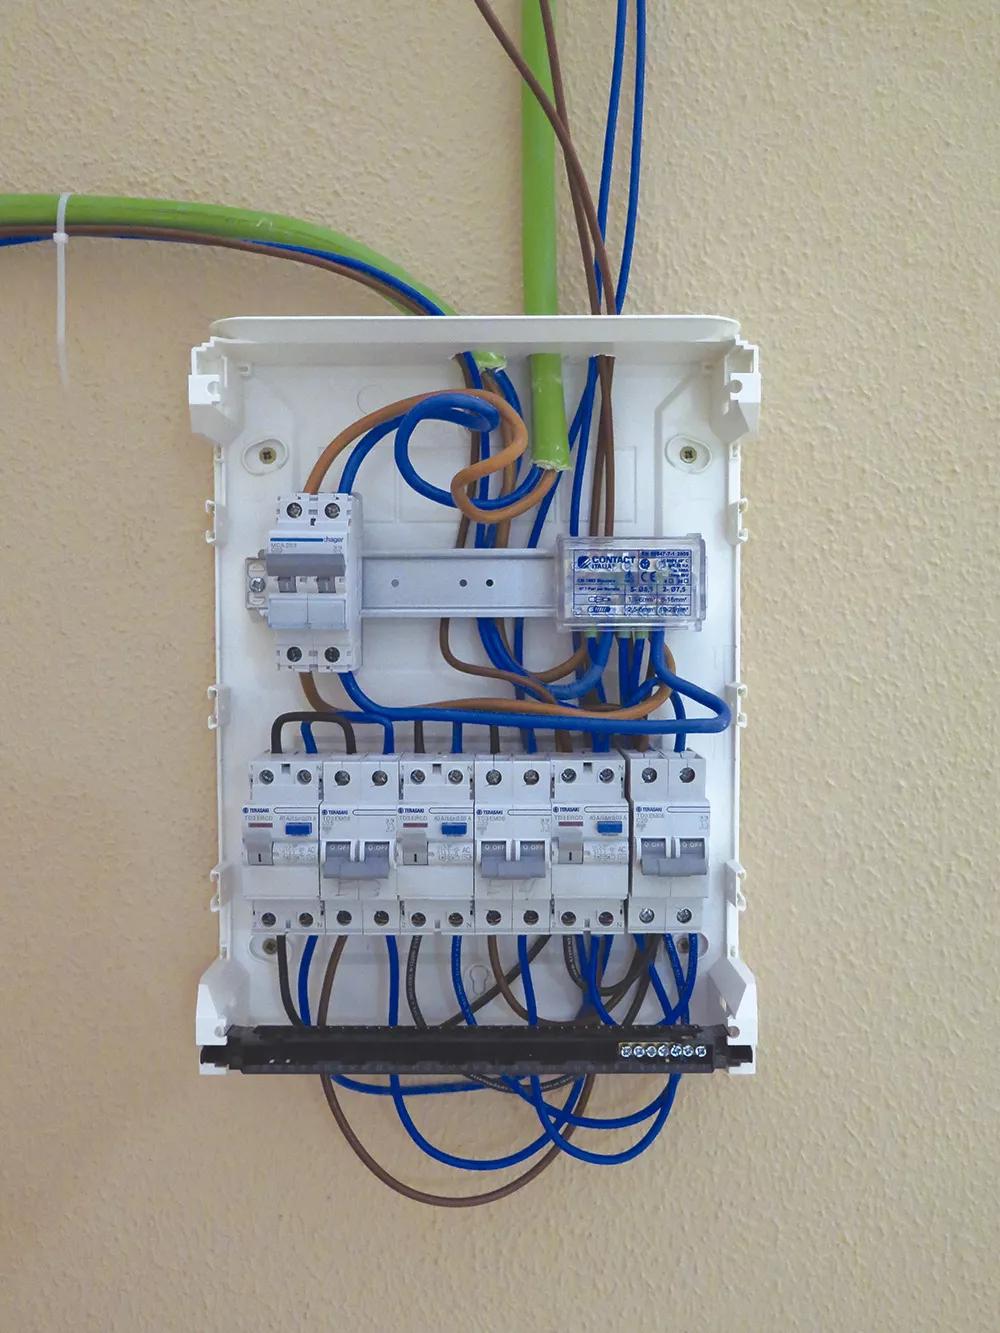 Monta una instalación eléctrica segura y revisa y aprieta las conexiones periódicamente. 